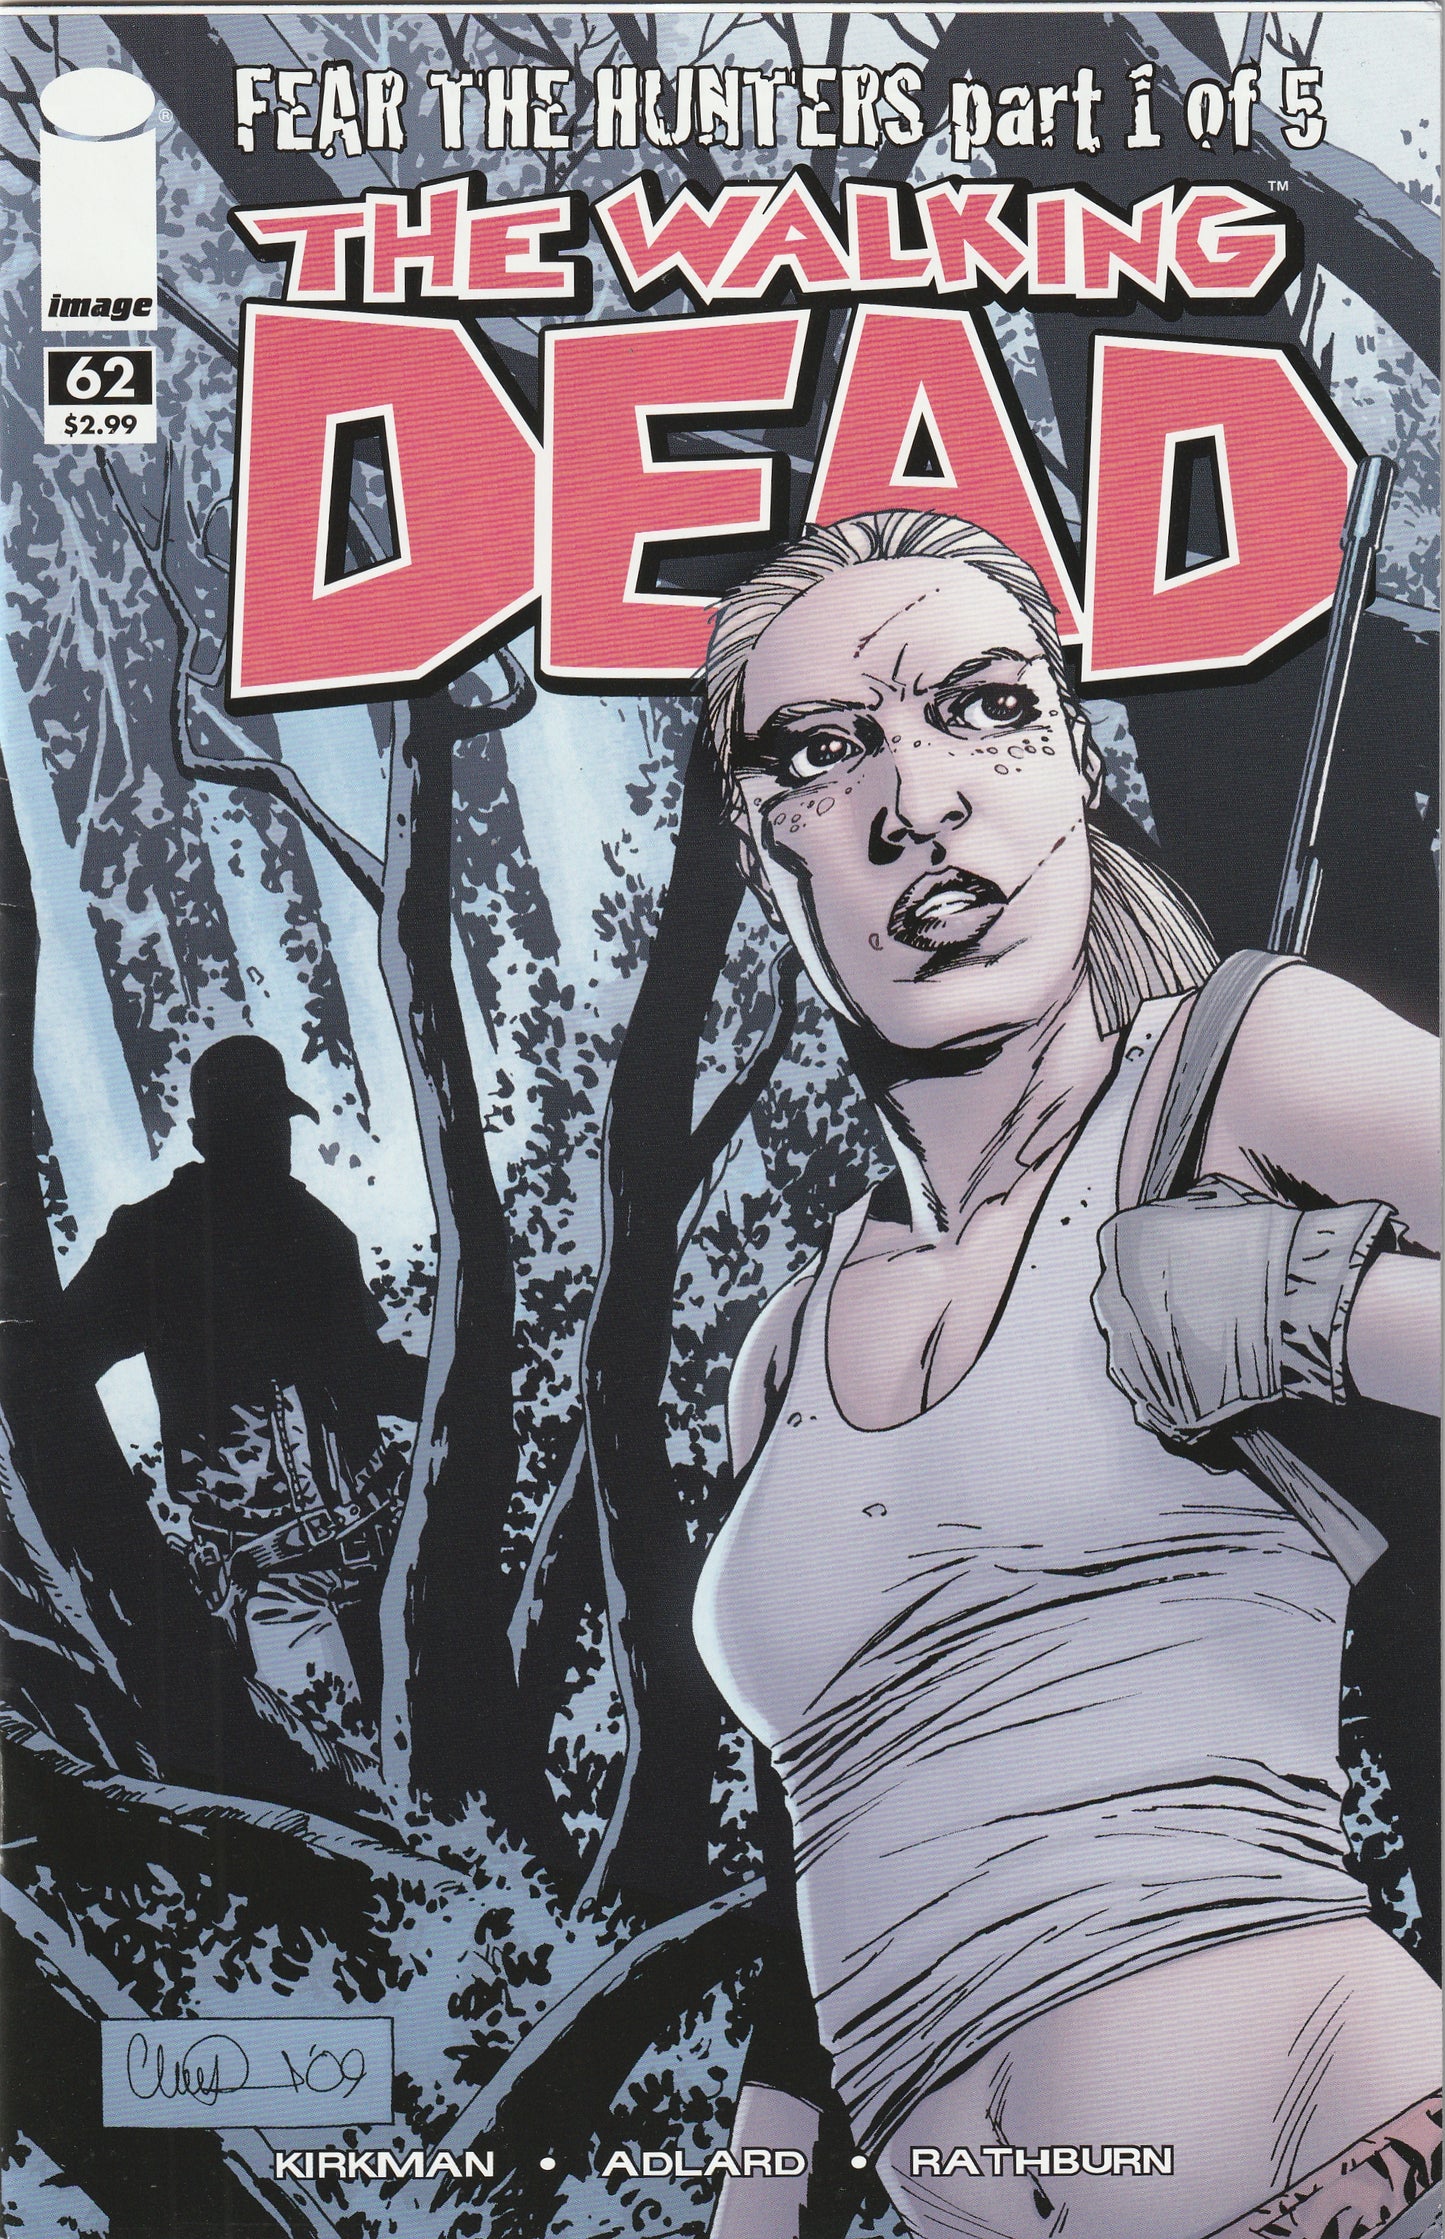 The Walking Dead #62 (2009) - Dale is bitten